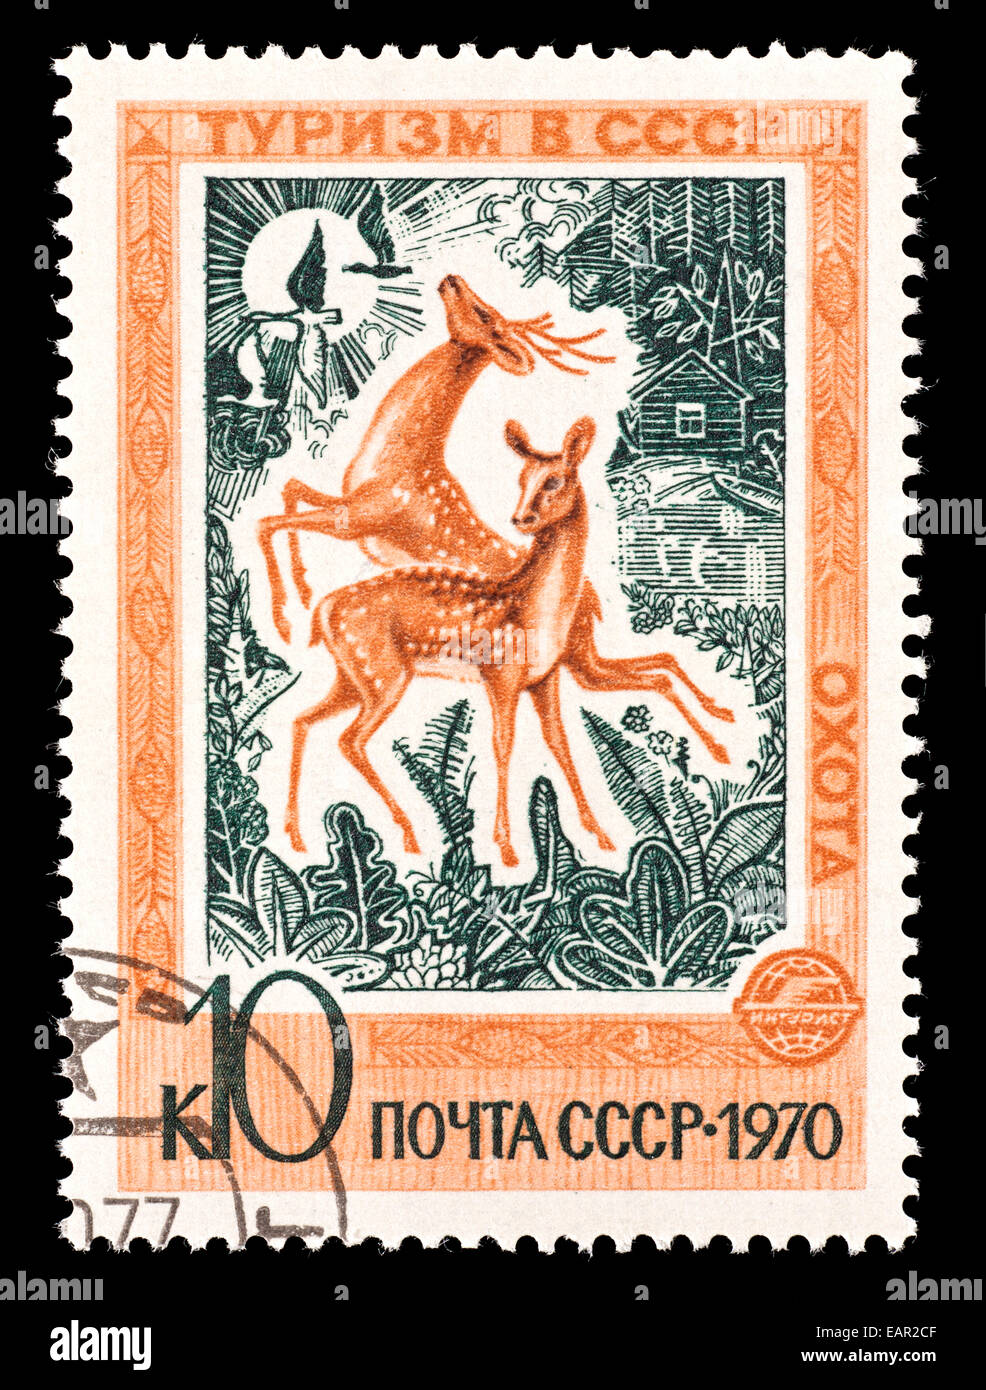 Timbre-poste de l'Union soviétique représentant deux chevreuils. Banque D'Images